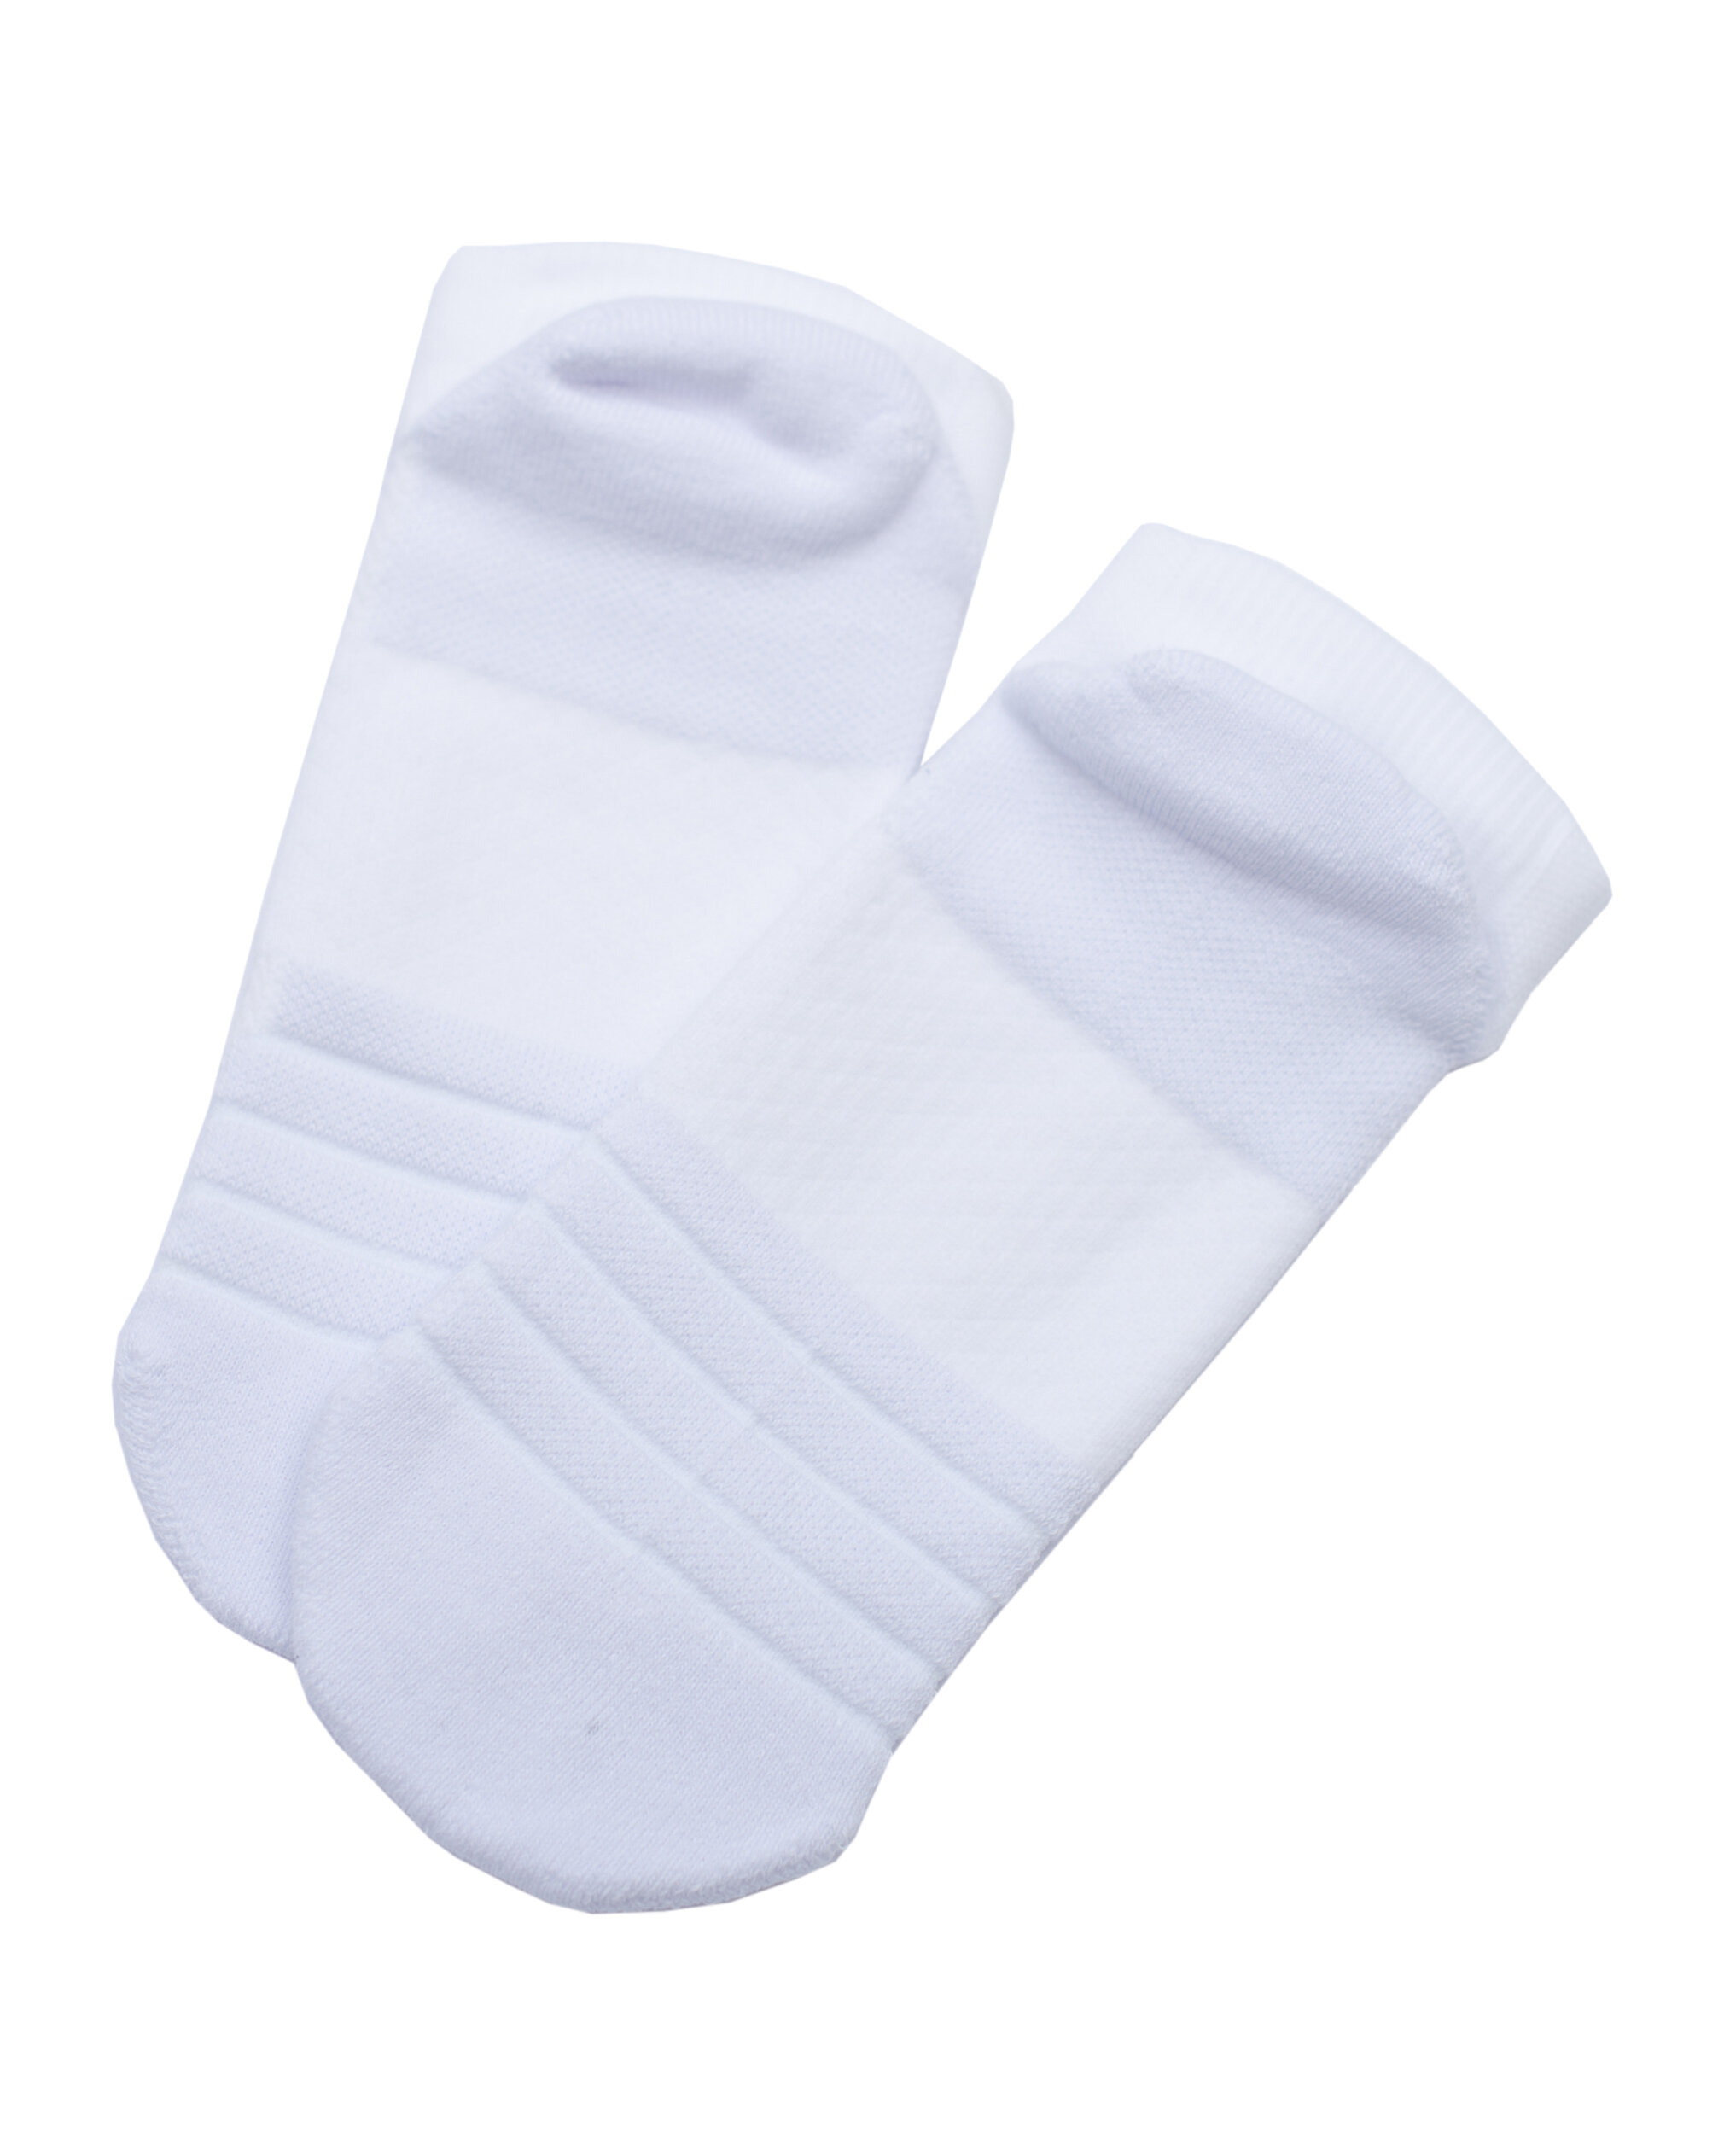 Y-FIT WEAR - Tech Socks